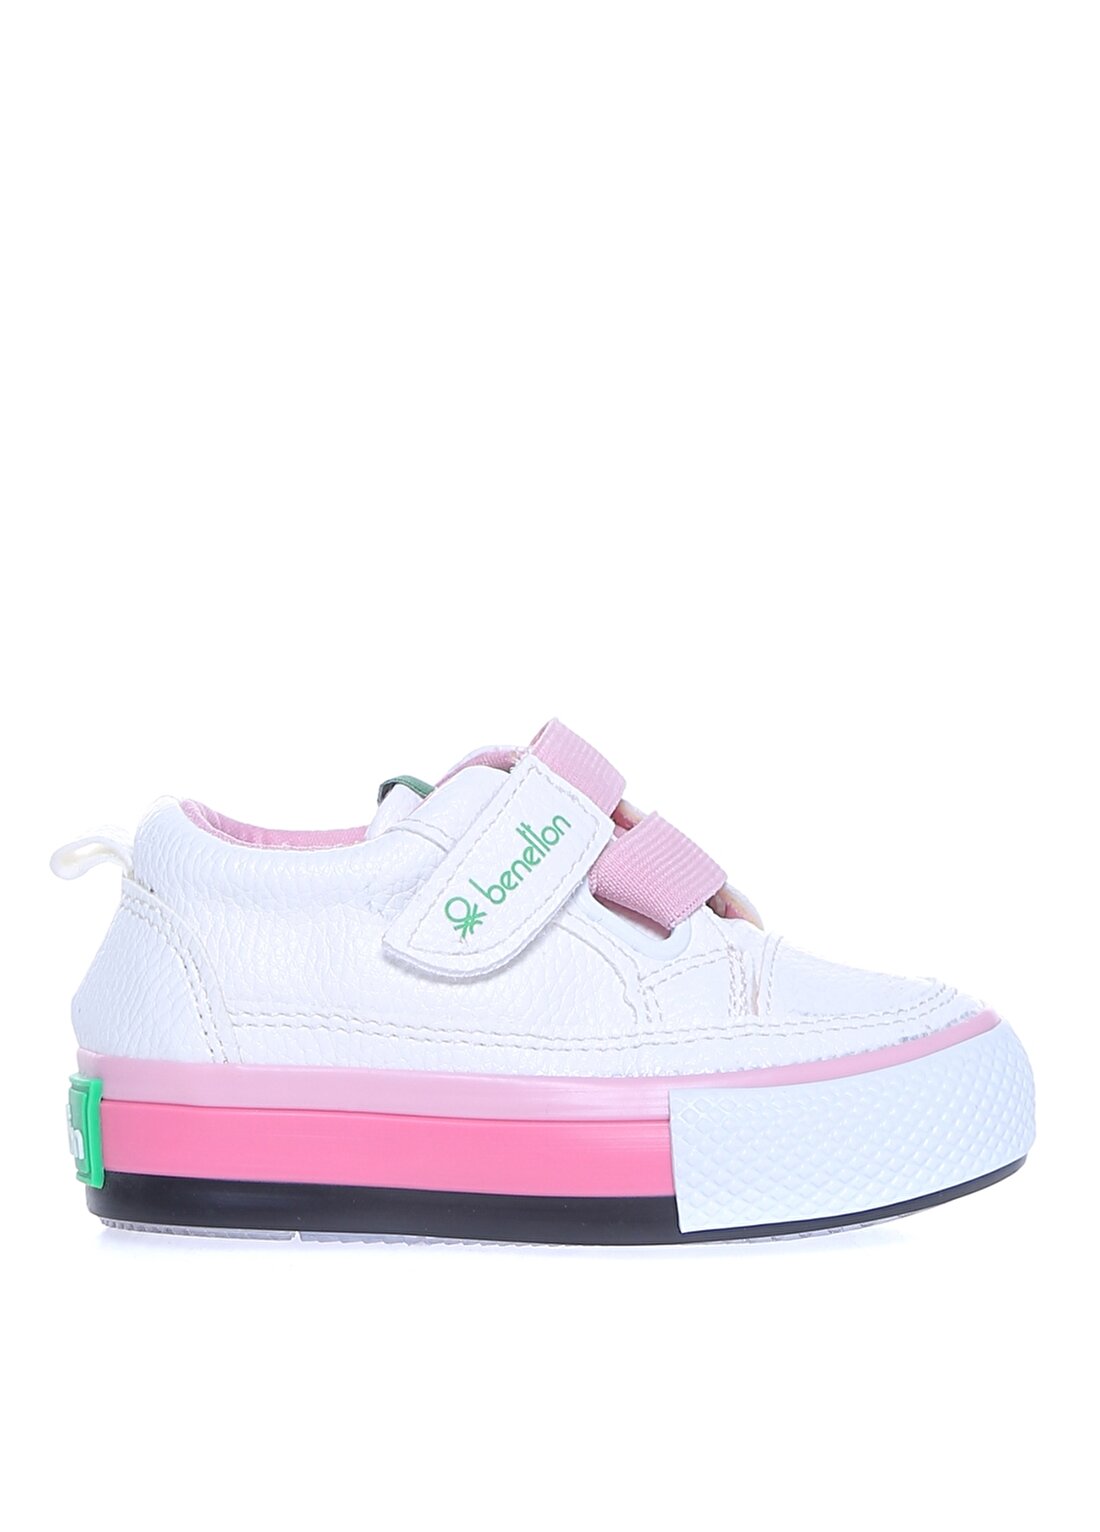 Benetton Beyaz - Pembe Bebek Yürüyüş Ayakkabısı BN-30445 177